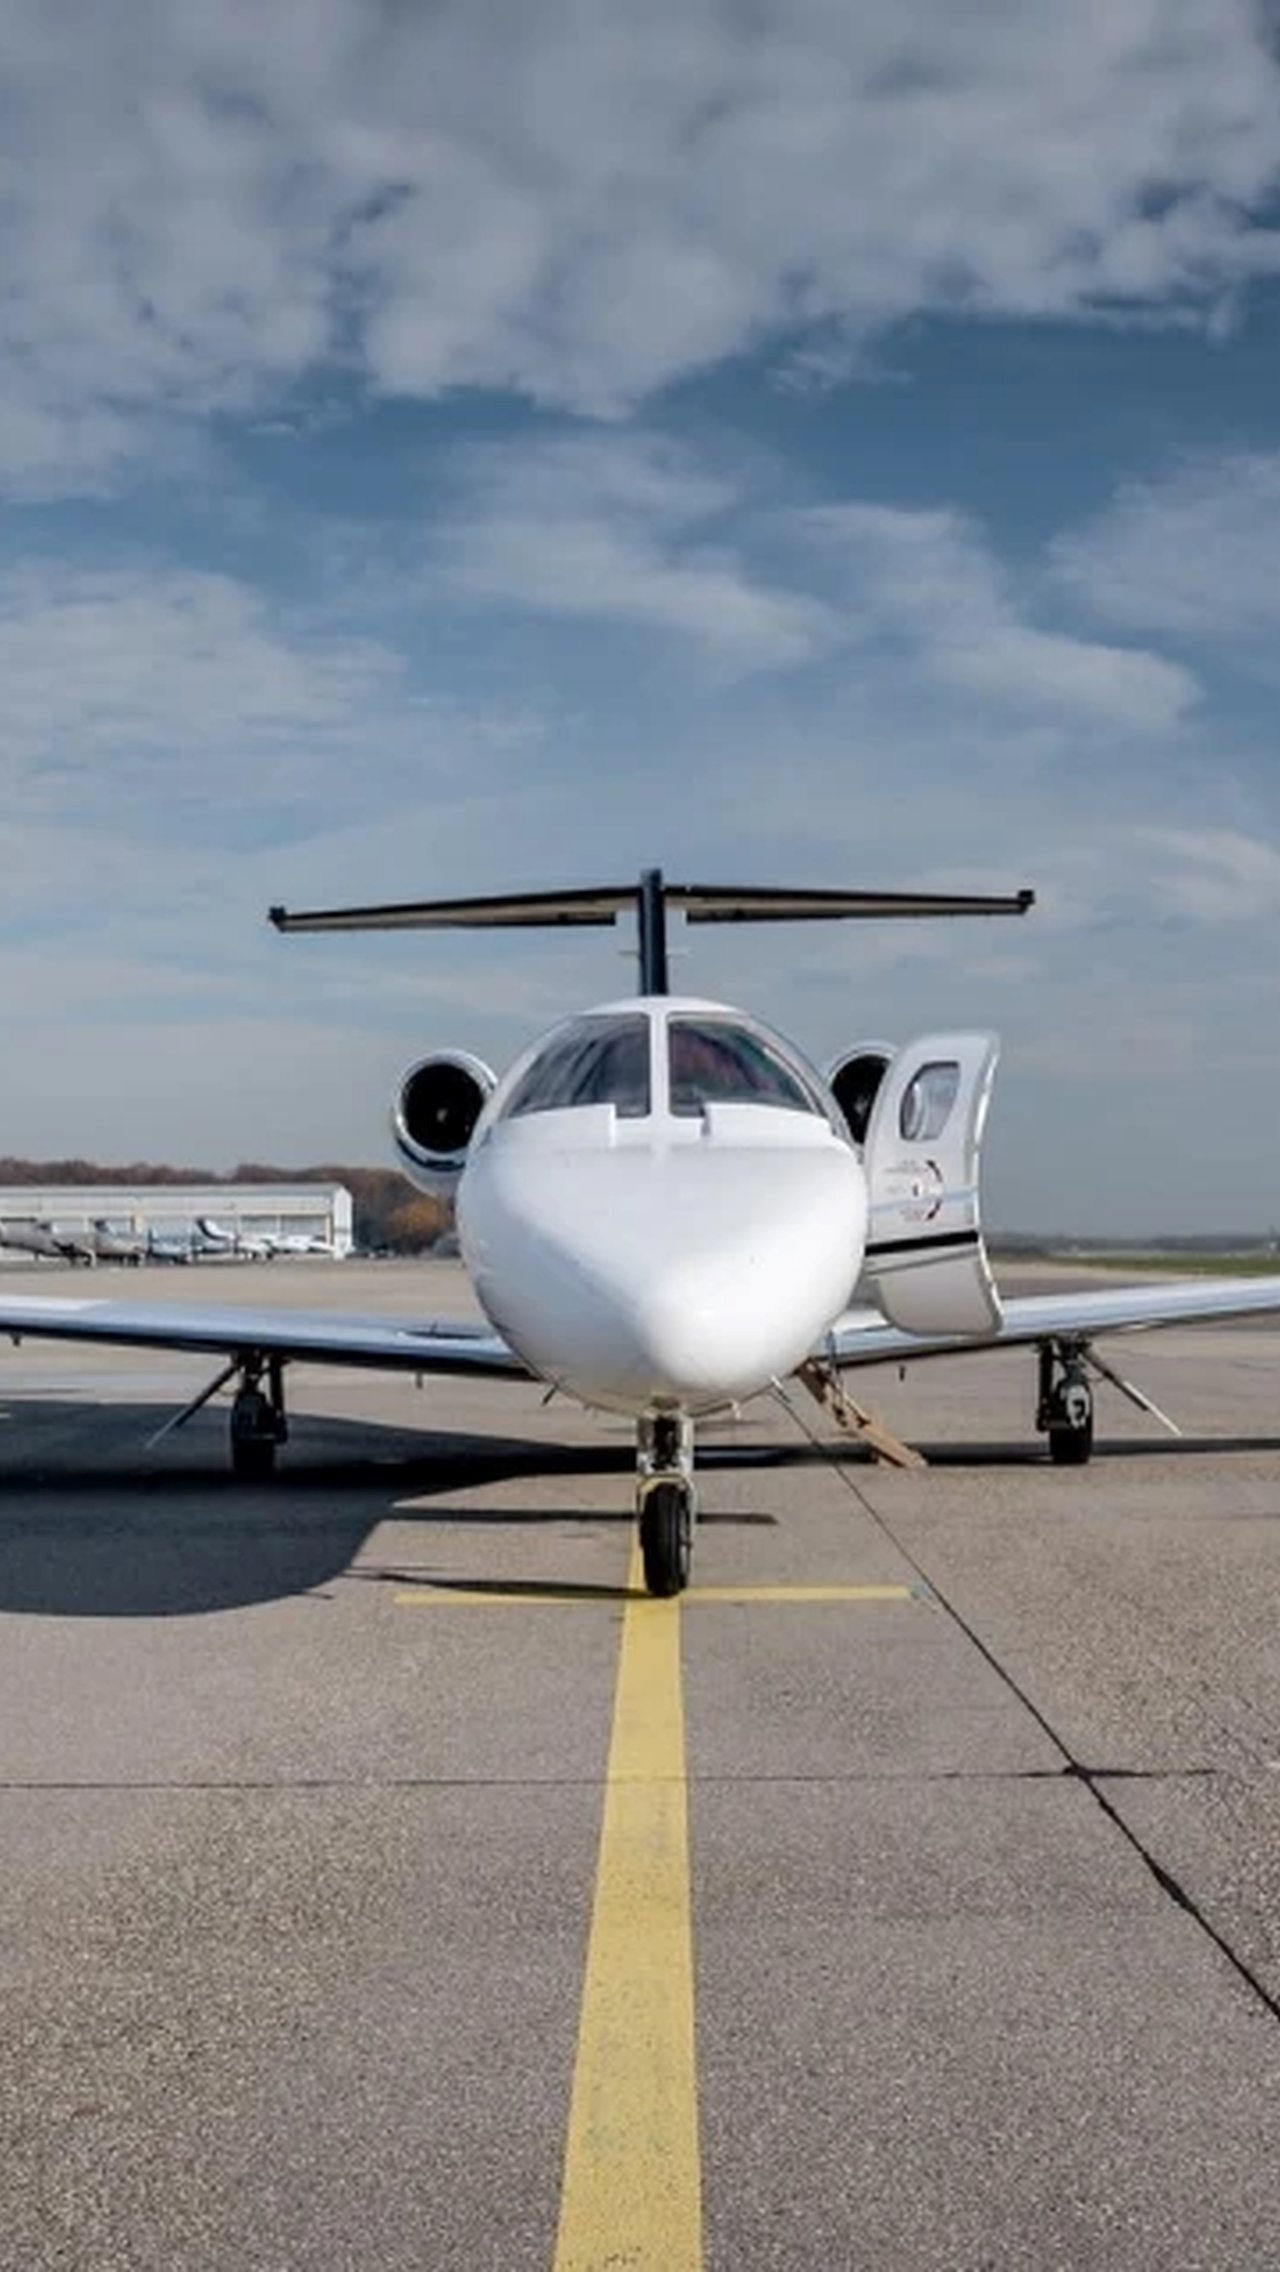 В распоряжении Надаля также есть собственный самолёт Cessna Citation CJ2+ стоимостью $ 6,7 млн. Обслуживание обходится в $ 300 тыс. в год. Cessna Citation CJ2+ вмещает 8 пассажиров.